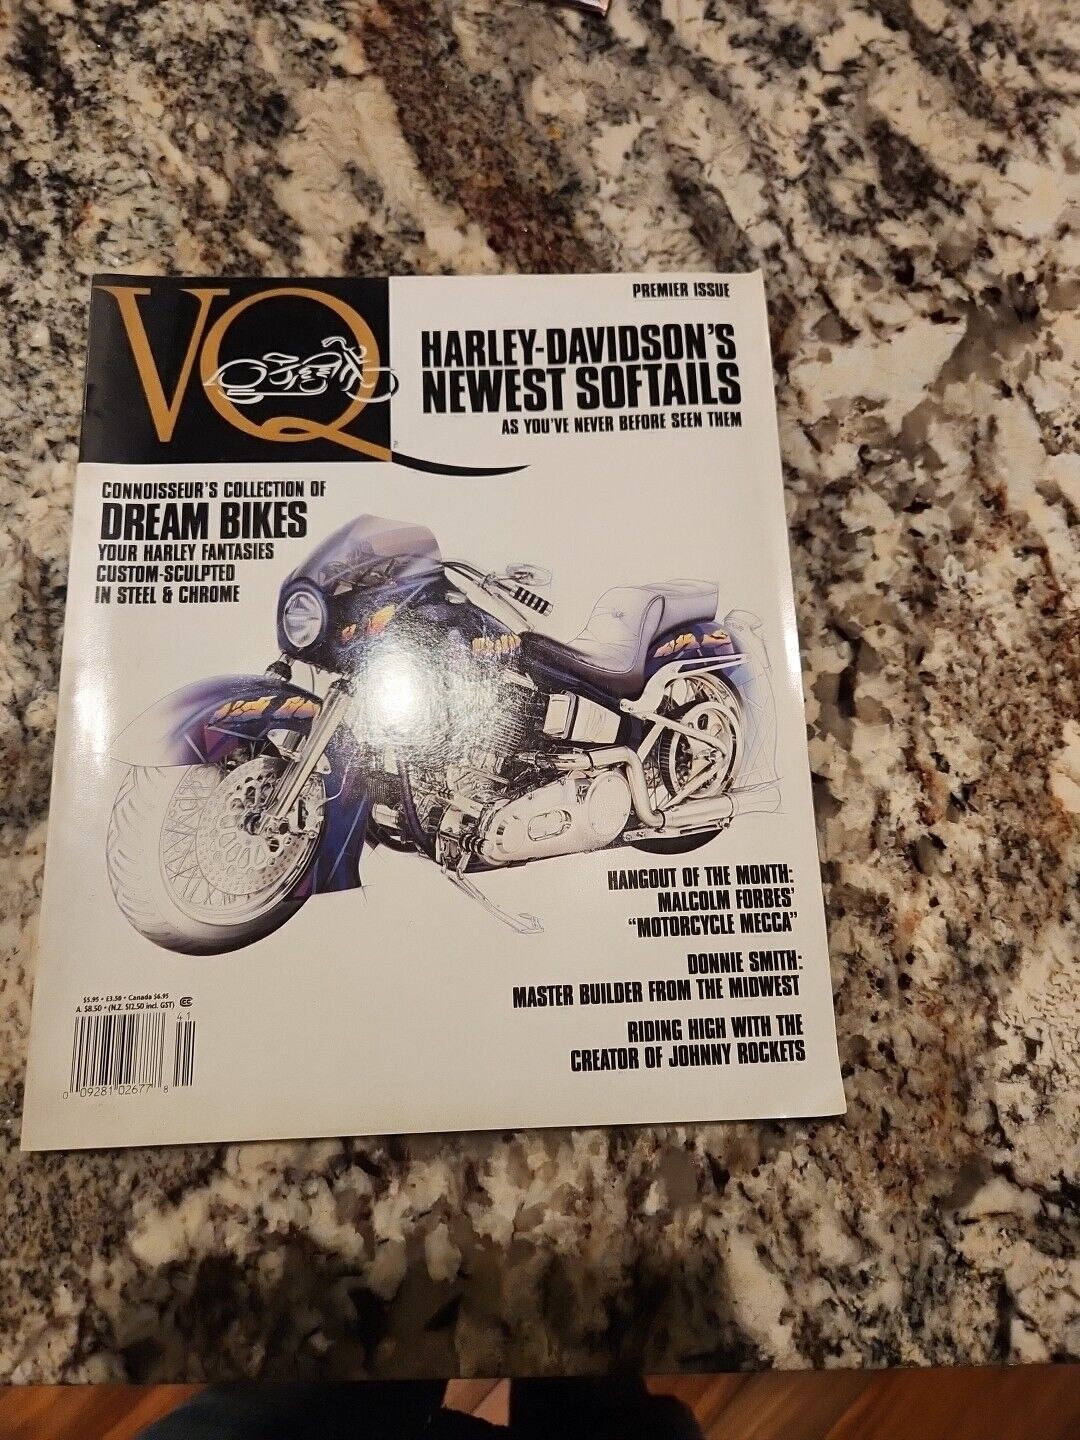 VQ 1993 Harley-Davidson Premier Issue Maginzine 